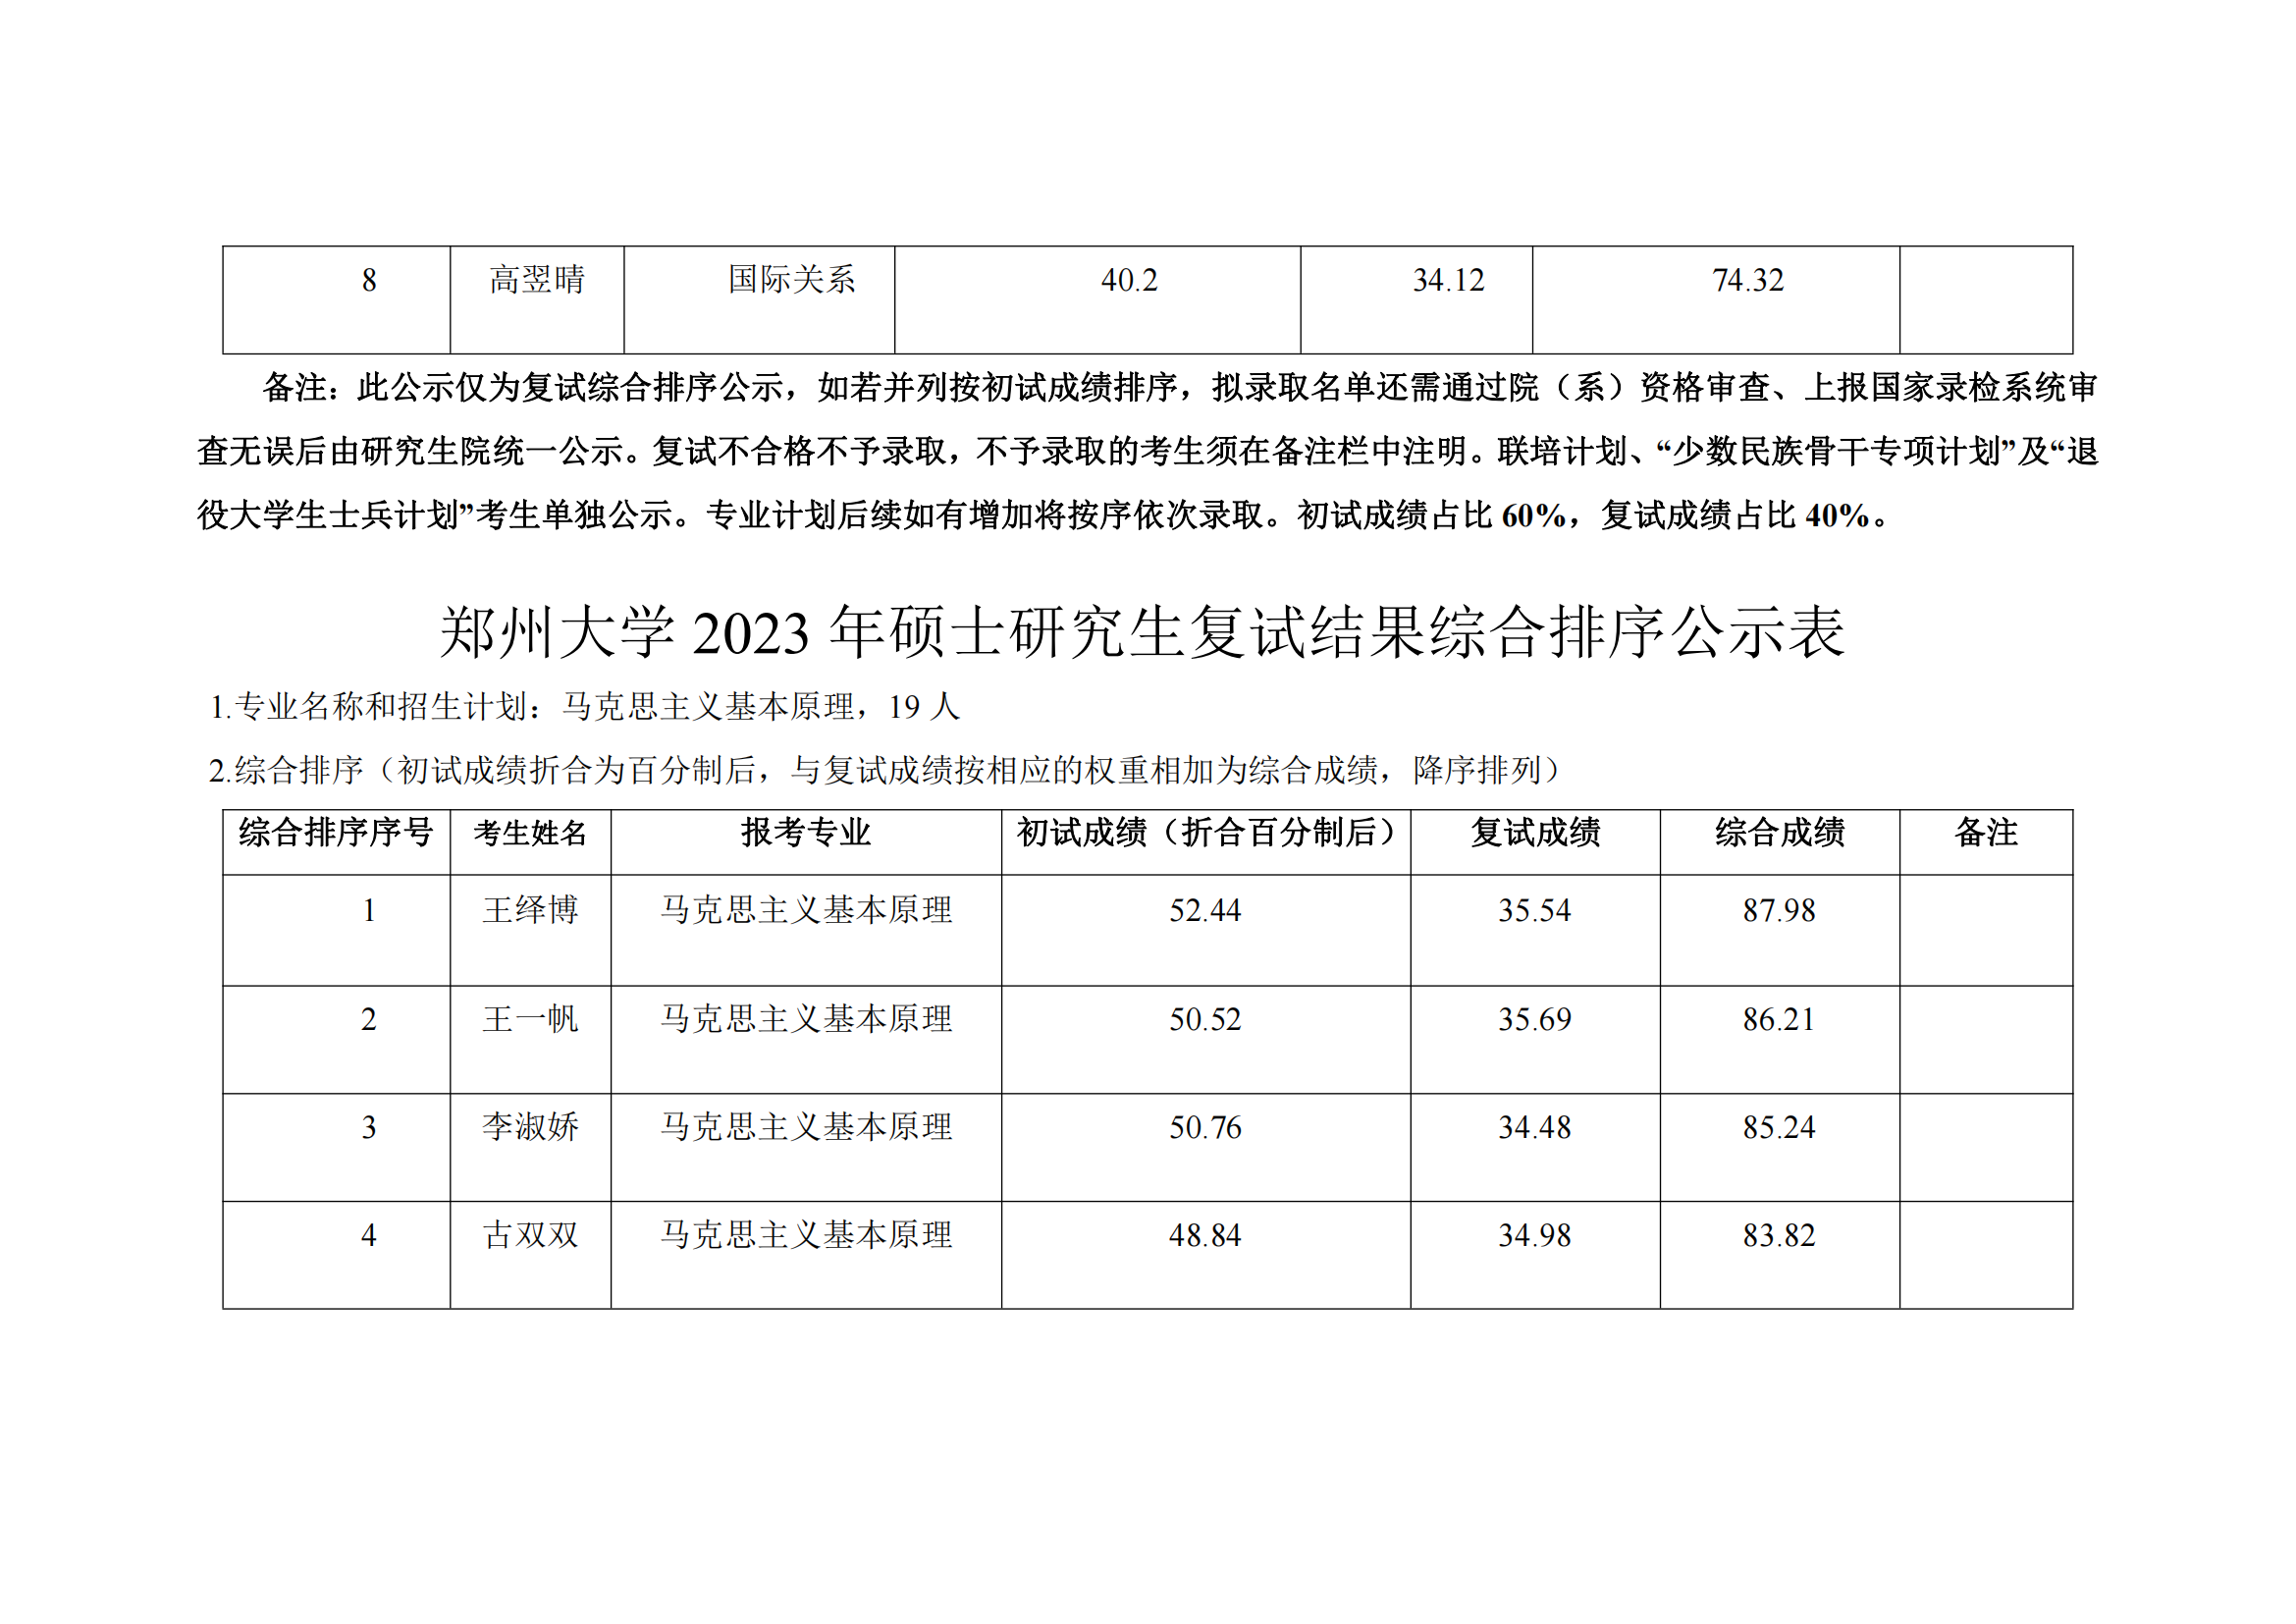 郑州大学马克思主义学院2023年硕士研究生复试结果综合排序公示表_04.png